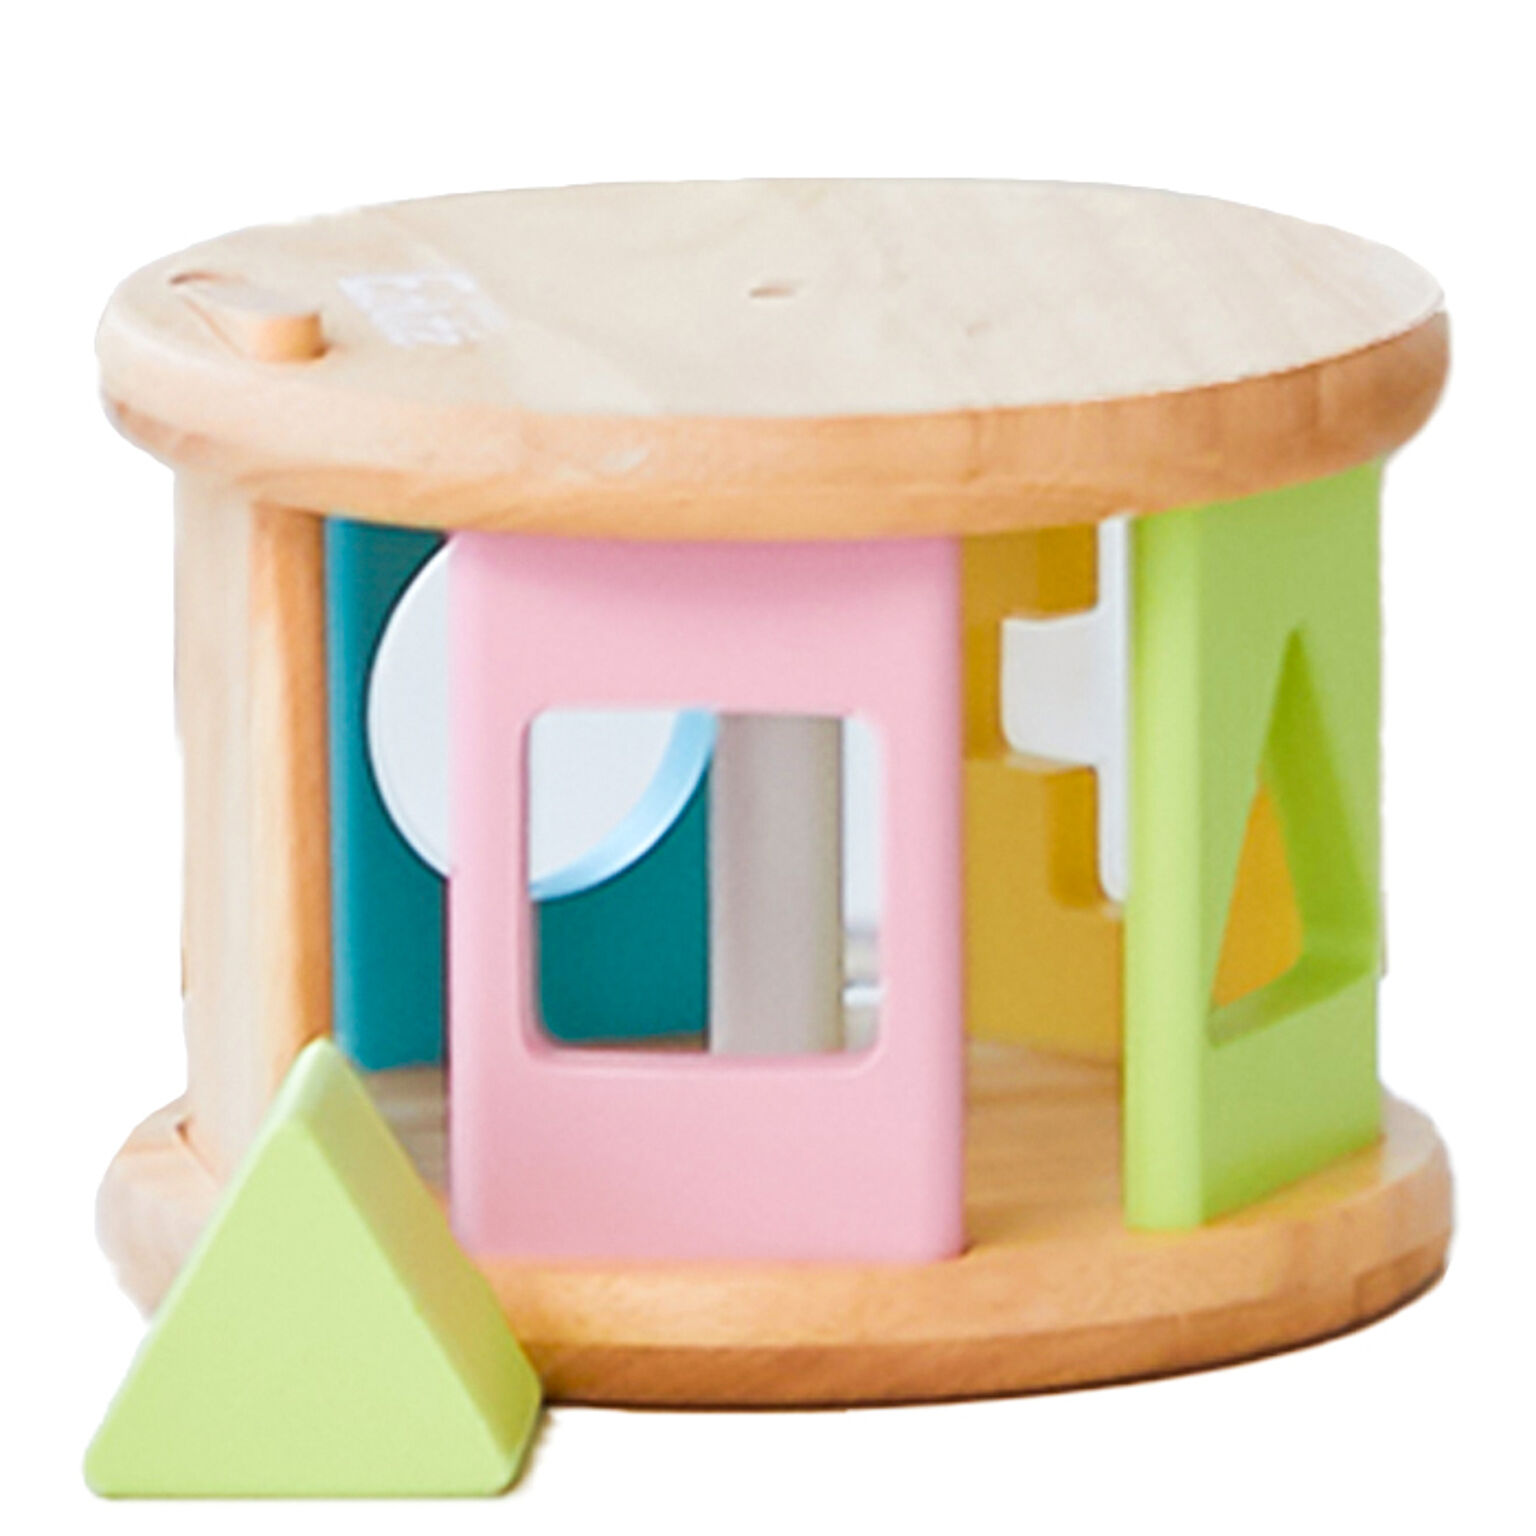 edute KOROKOROパズル おもちゃ 型はめ 積み木 知育 知育玩具 1歳 子供 女の子 男の子 プレゼント 安全 出産祝い かわいい ベビー 赤ちゃん